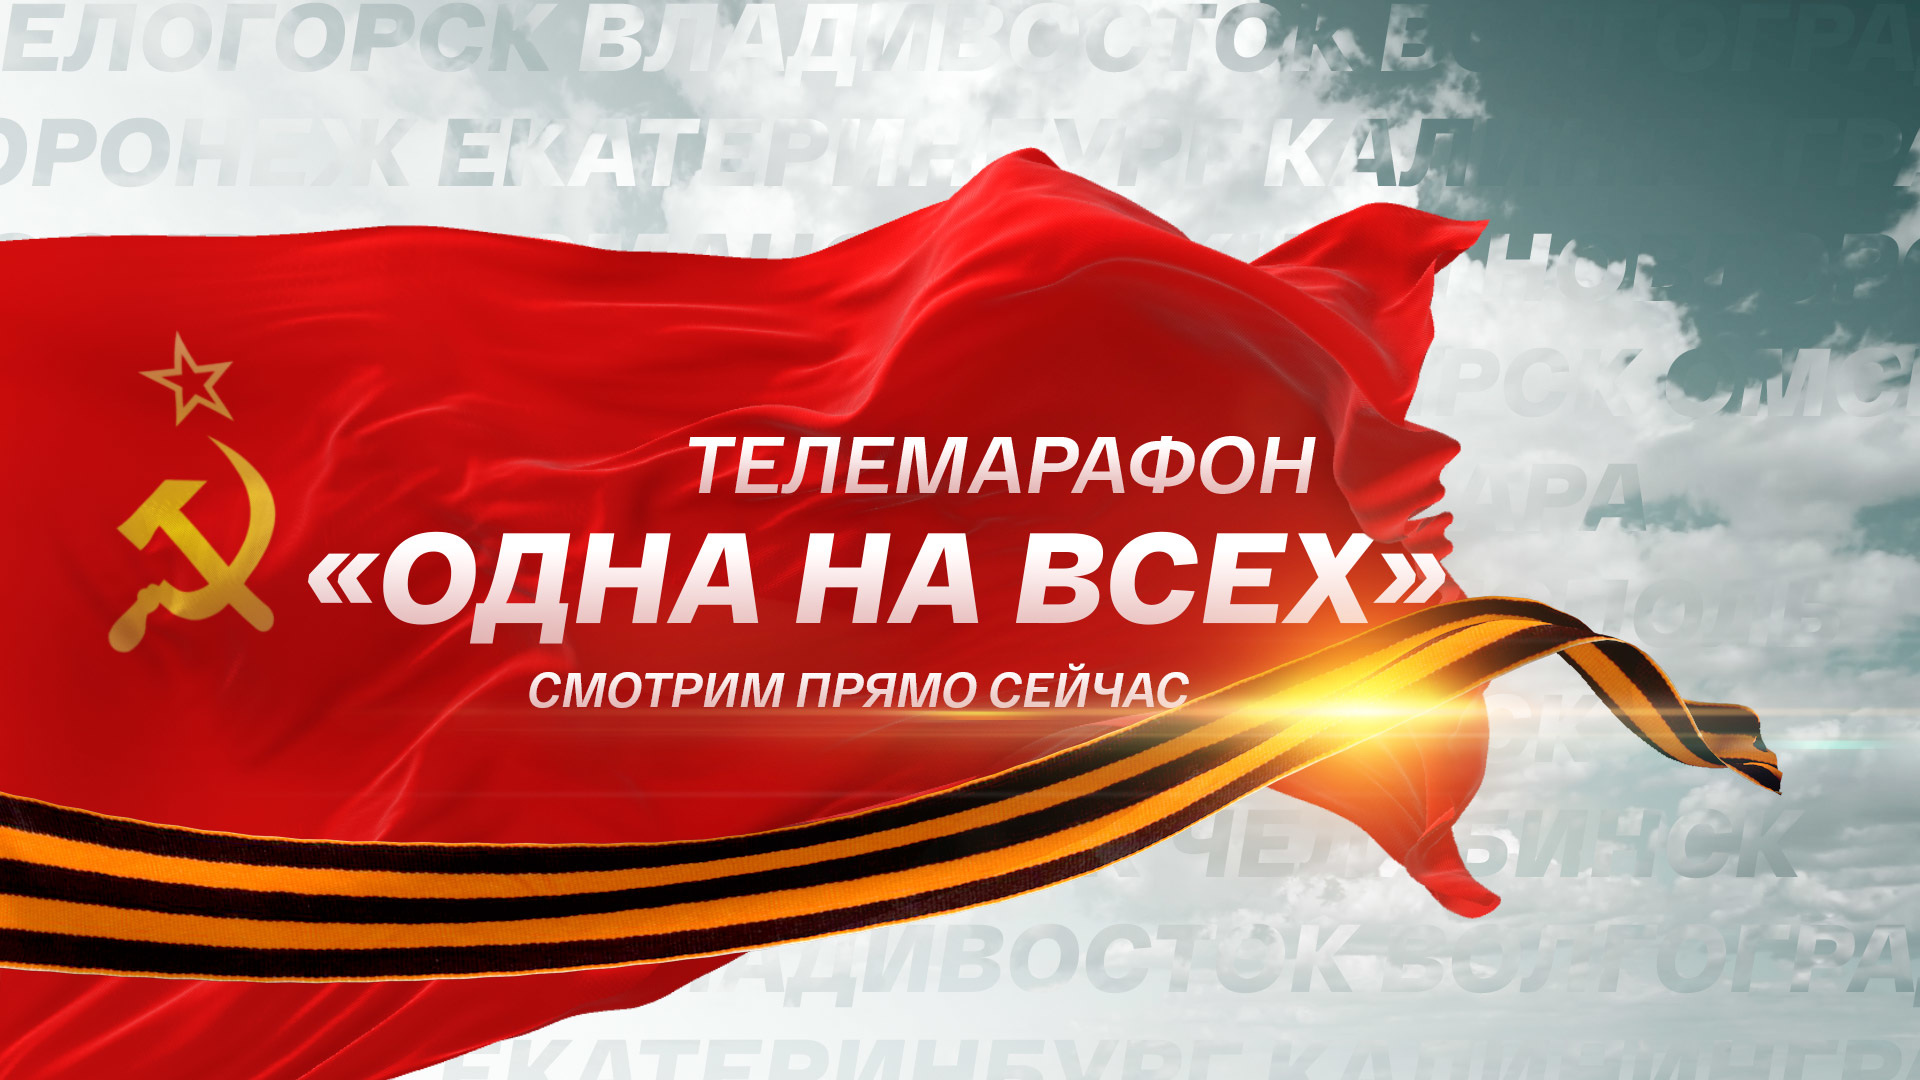 «Одна на всех»: ВГТРК посвятила Великой Победе уникальный всероссийский телемарафон